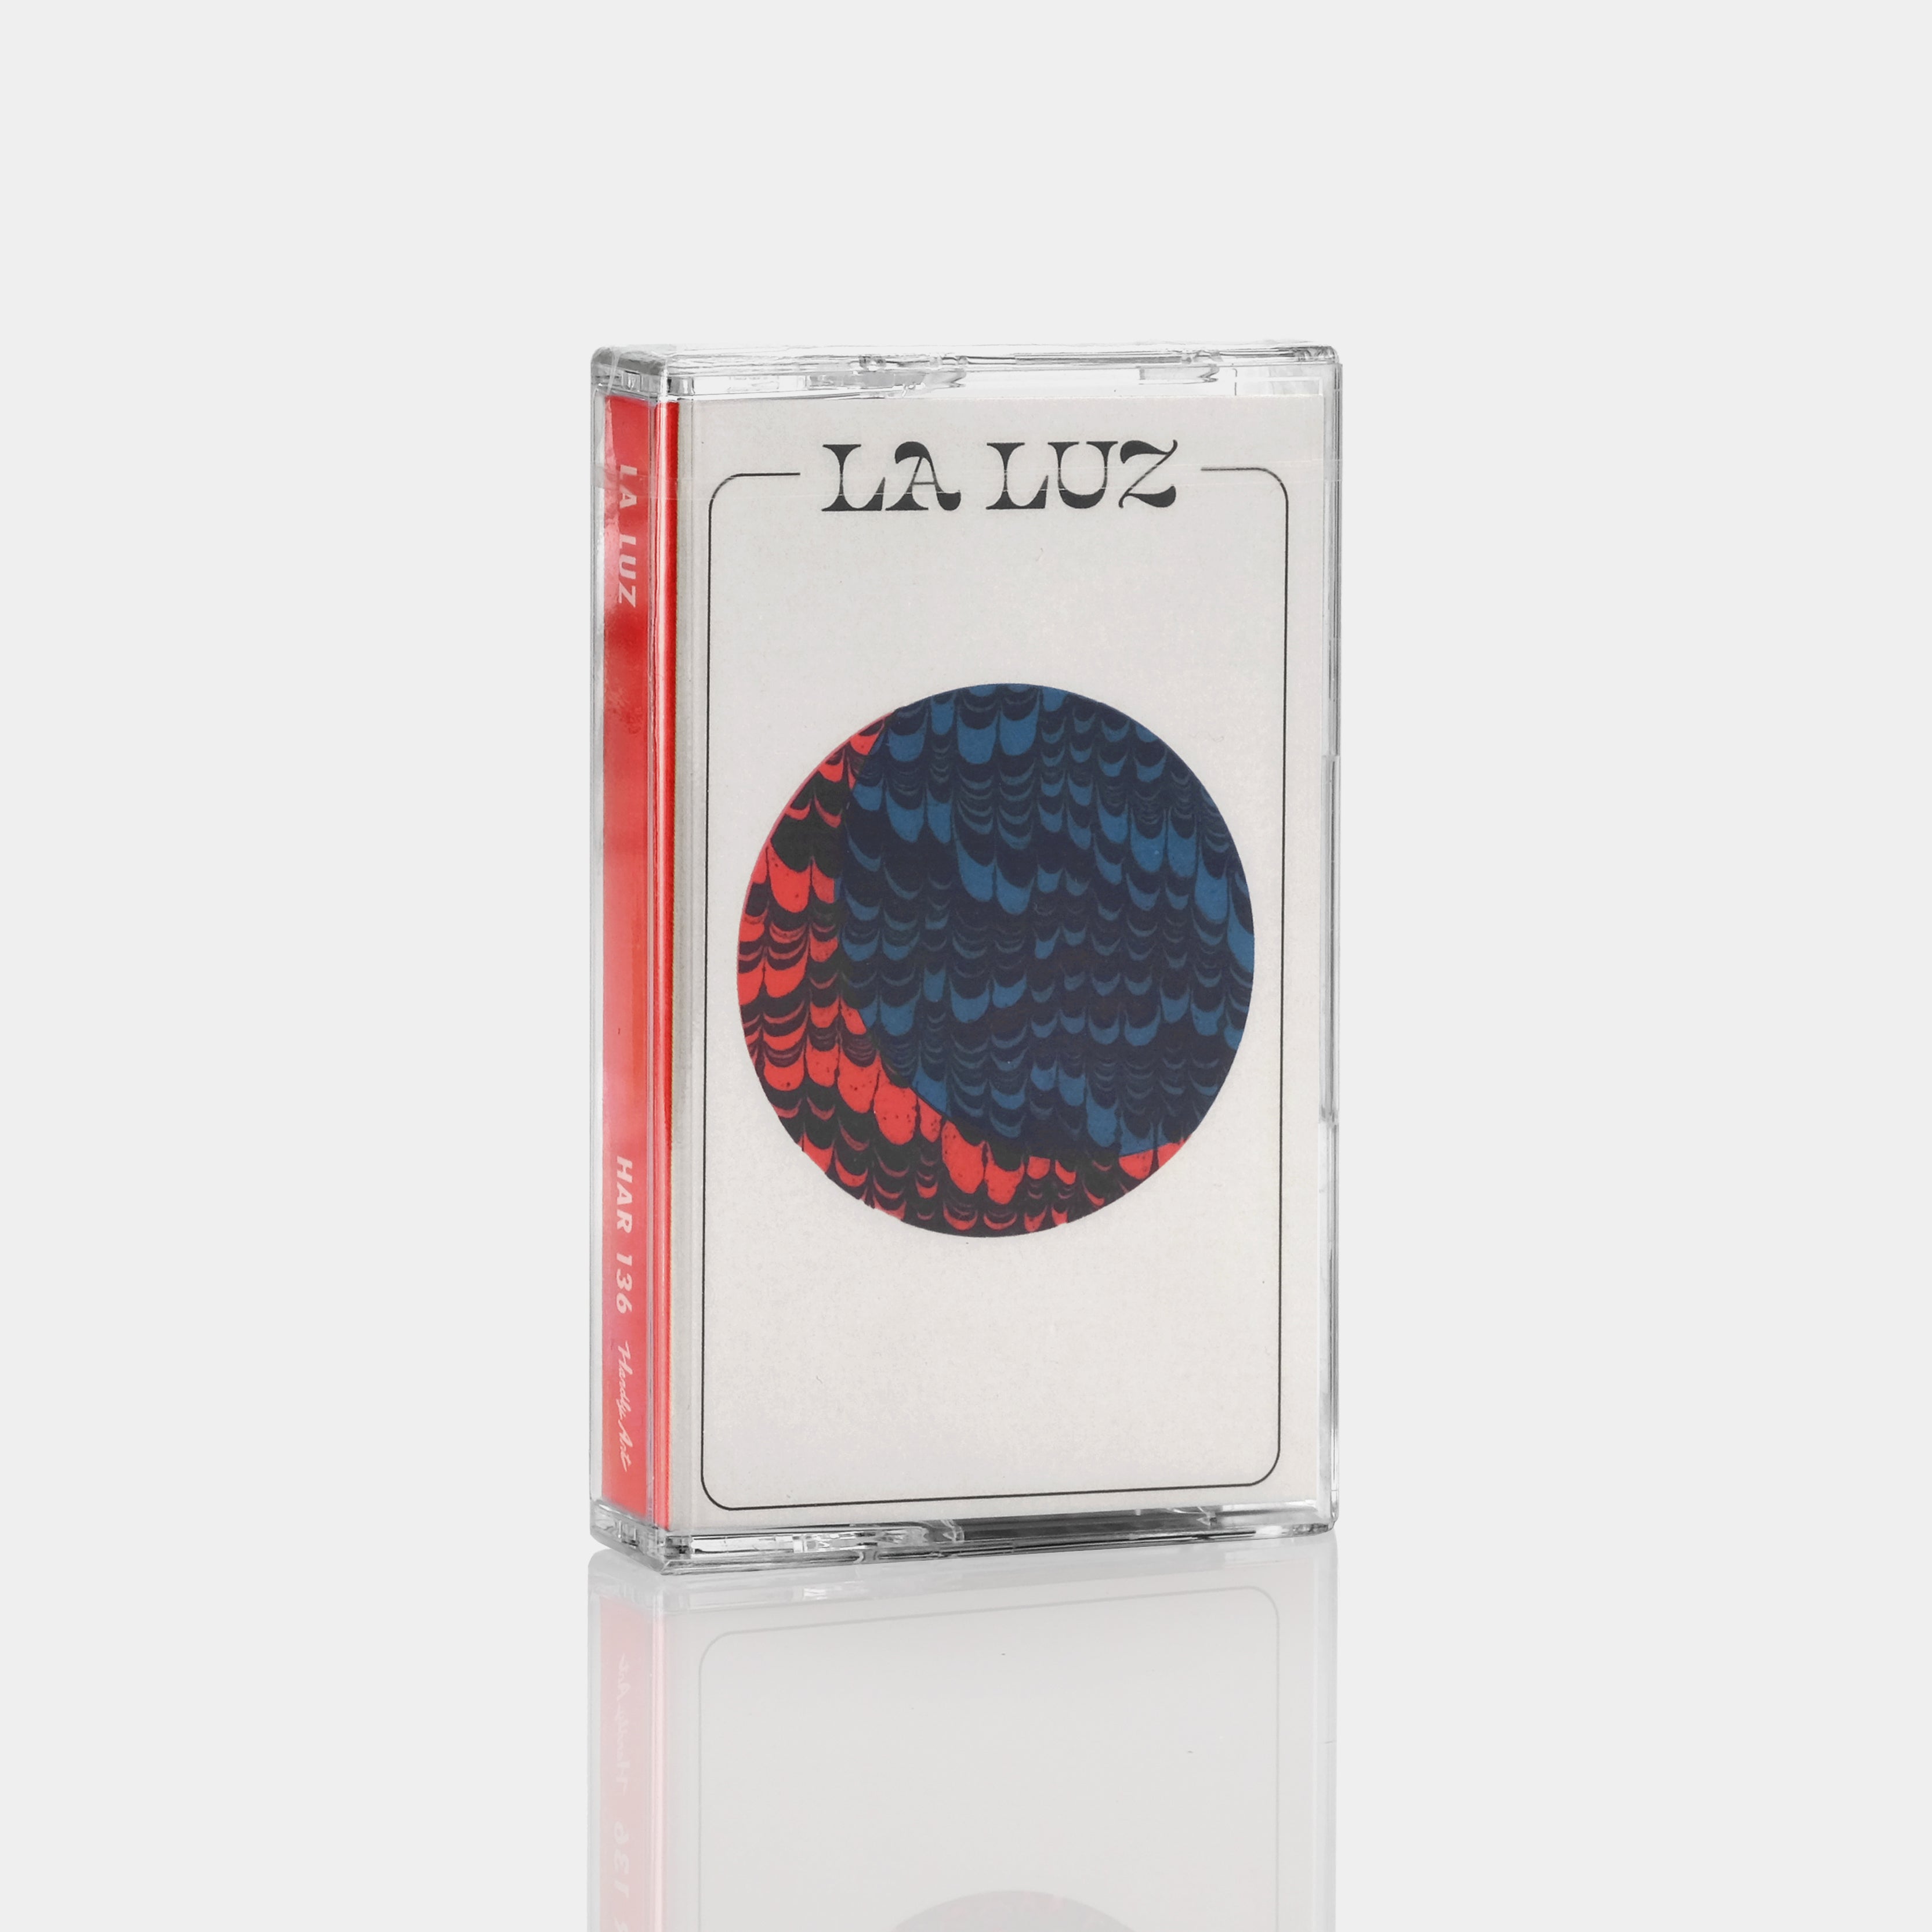 La Luz - La Luz Cassette Tape